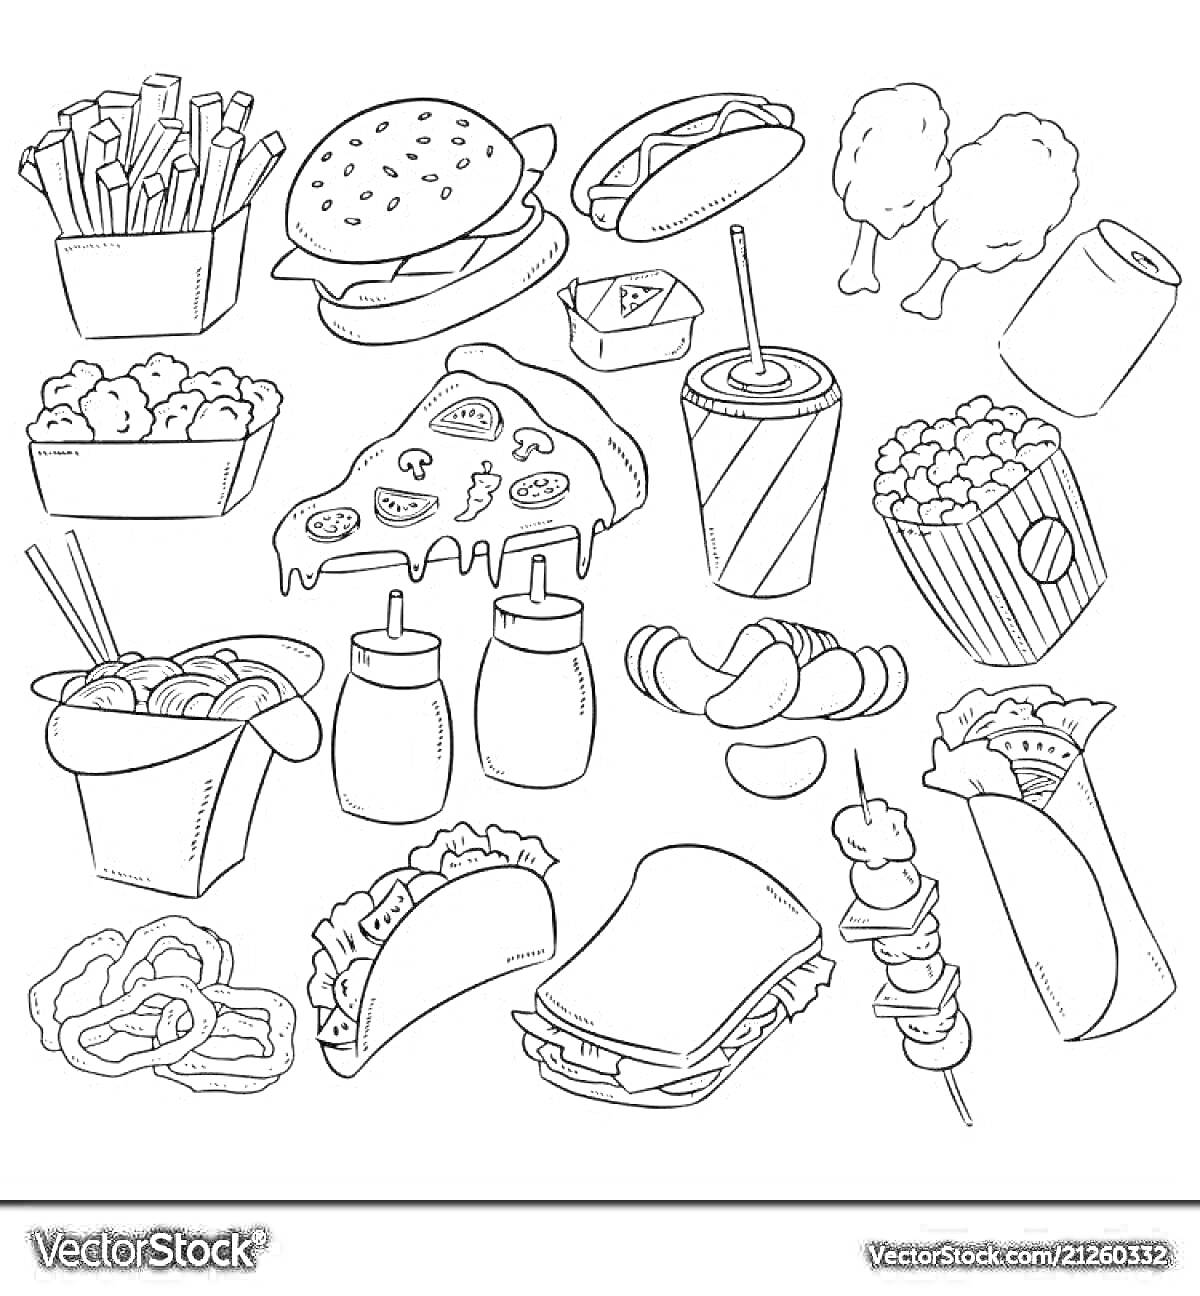 Разнообразная еда: картофель фри, бургер, суши, куриные ножки, наггетсы, пицца, напиток в стакане с трубочкой, попкорн, лапша в коробке, бутылки соусом, чипсы, роллы, крендели, тако, сэндвич, шашлык, буррито